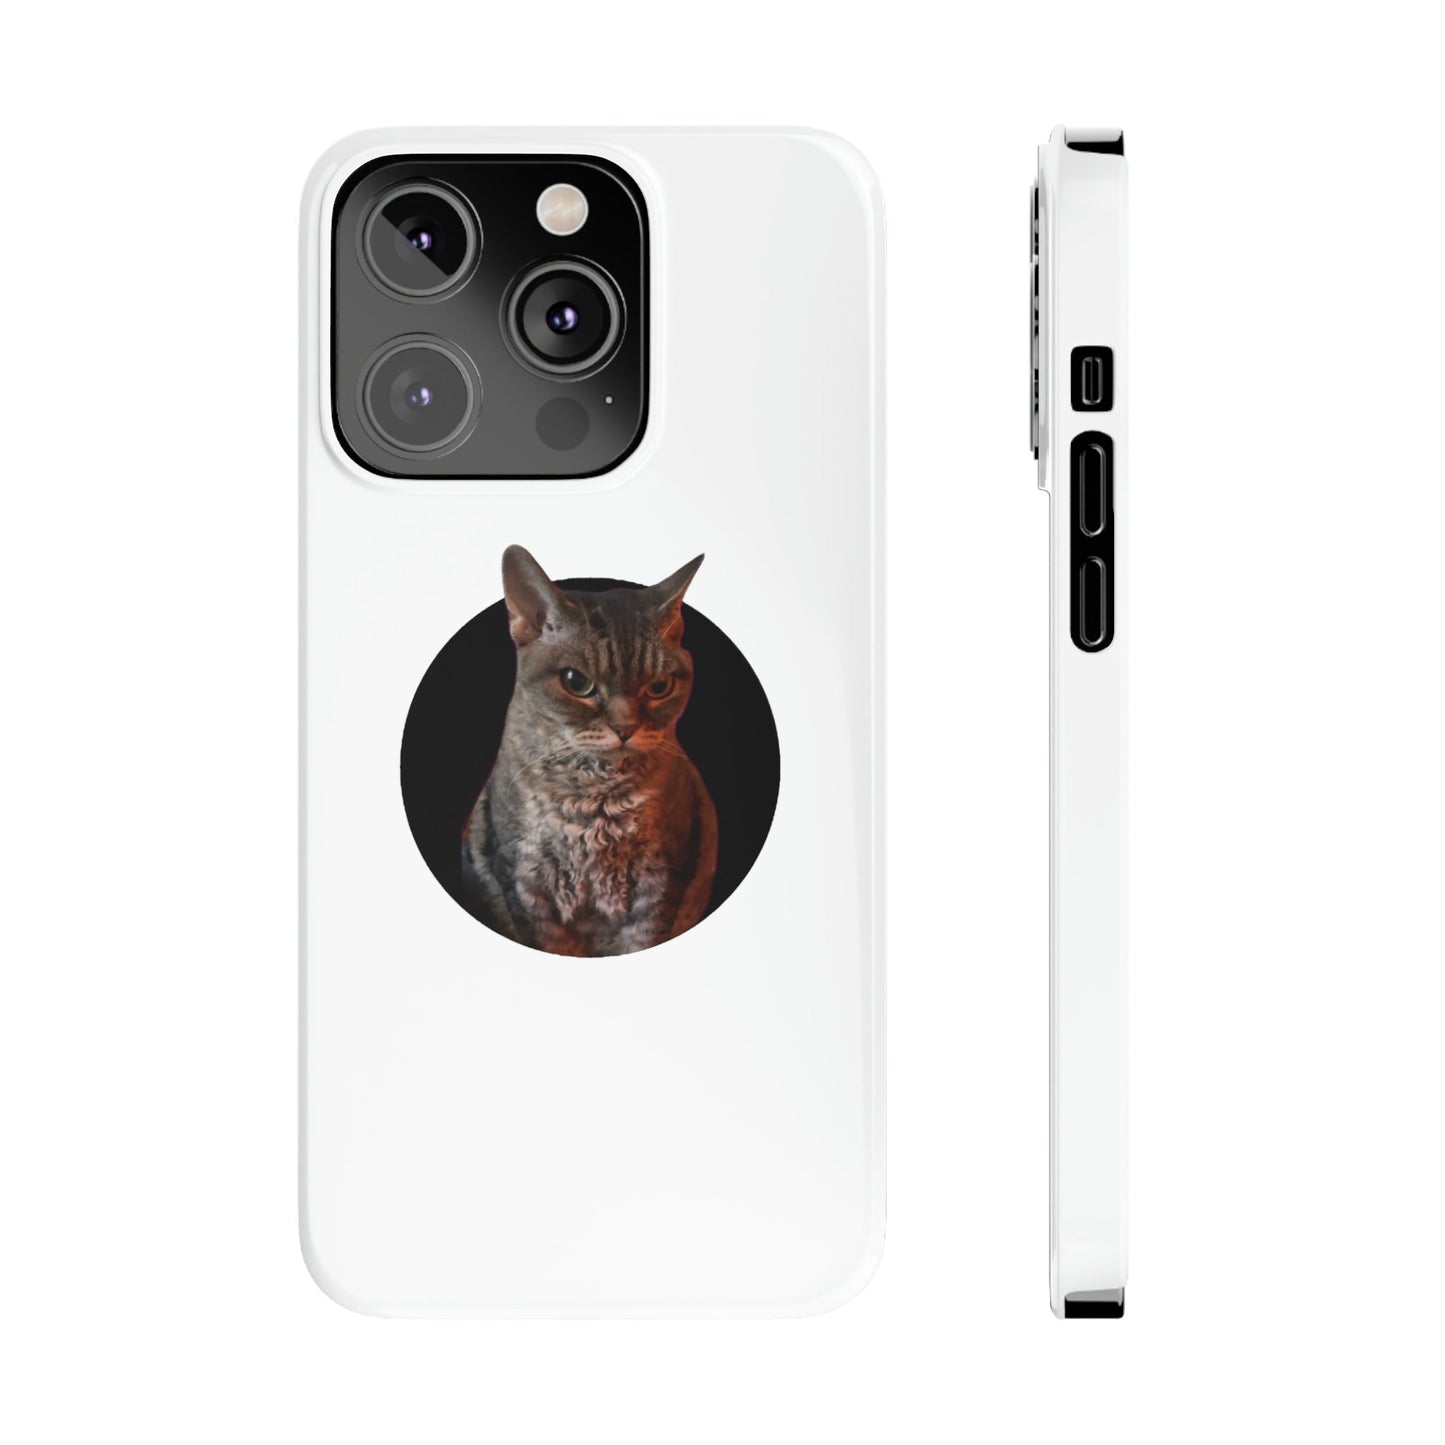 Angry Cat Meme Slim Phone Cases - getallfun